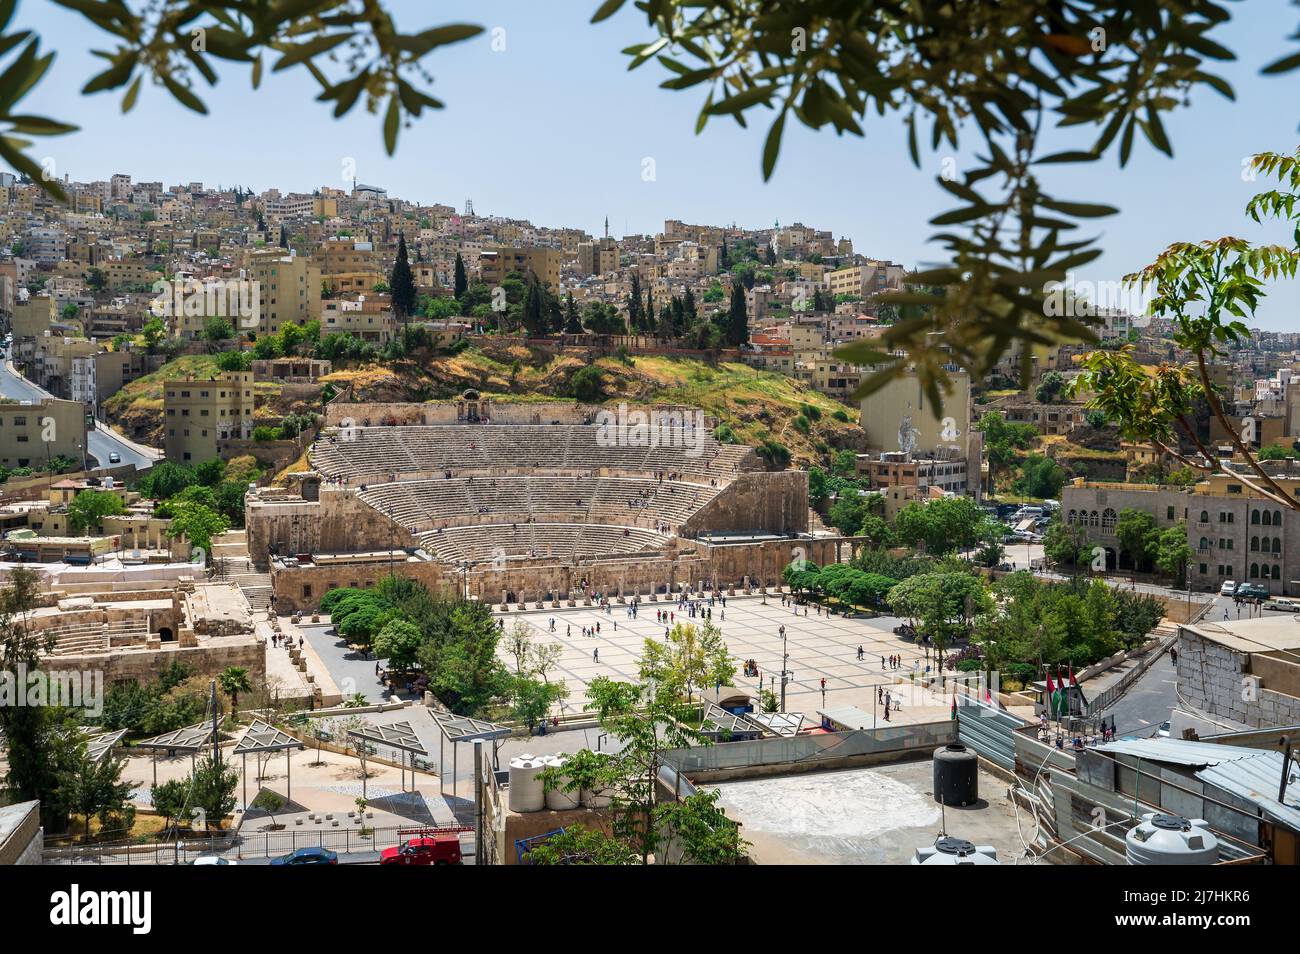 El horizonte del centro de Ammán en Jordania dominado por la antigua estructura del teatro romano entre casas residenciales en el centro de la ciudad vieja Foto de stock